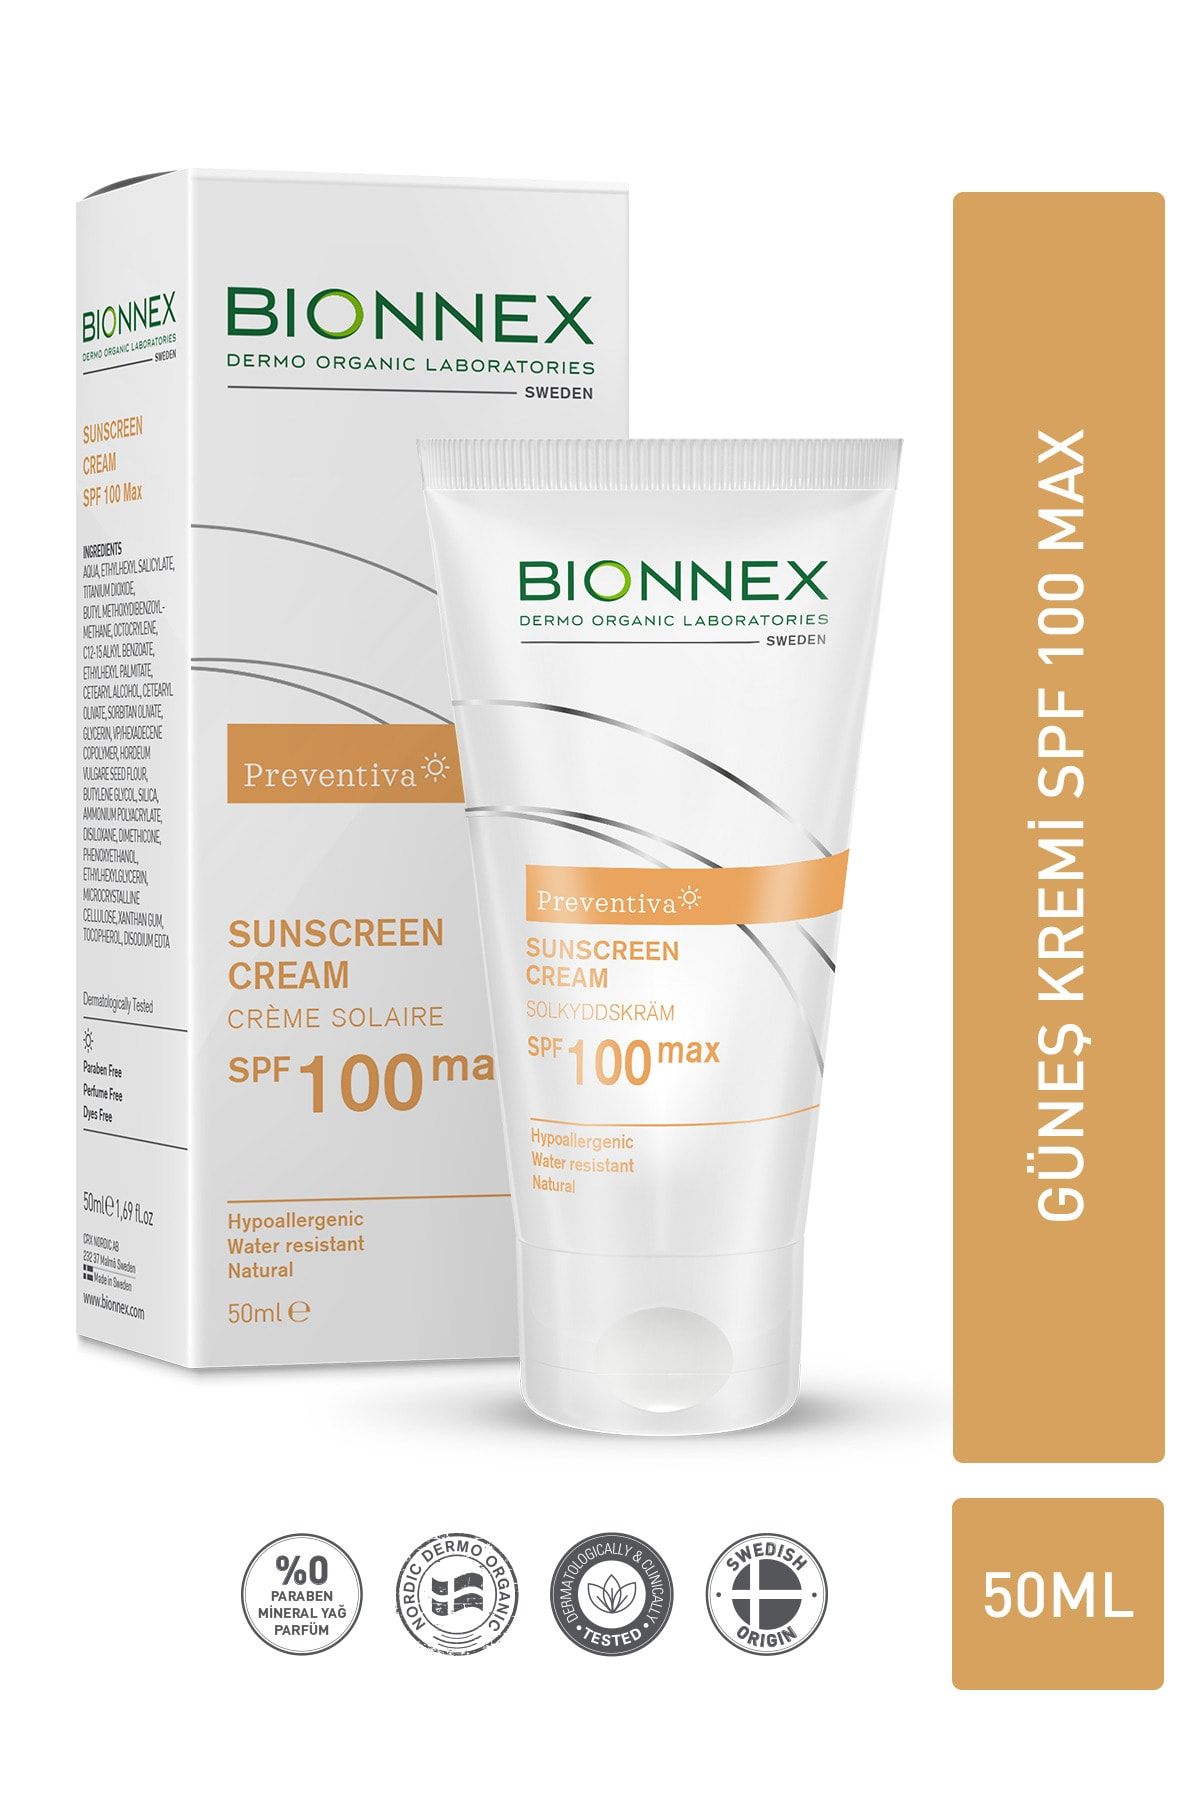 Bionnex Preventiva Sunscreen Cream Spf100 Max